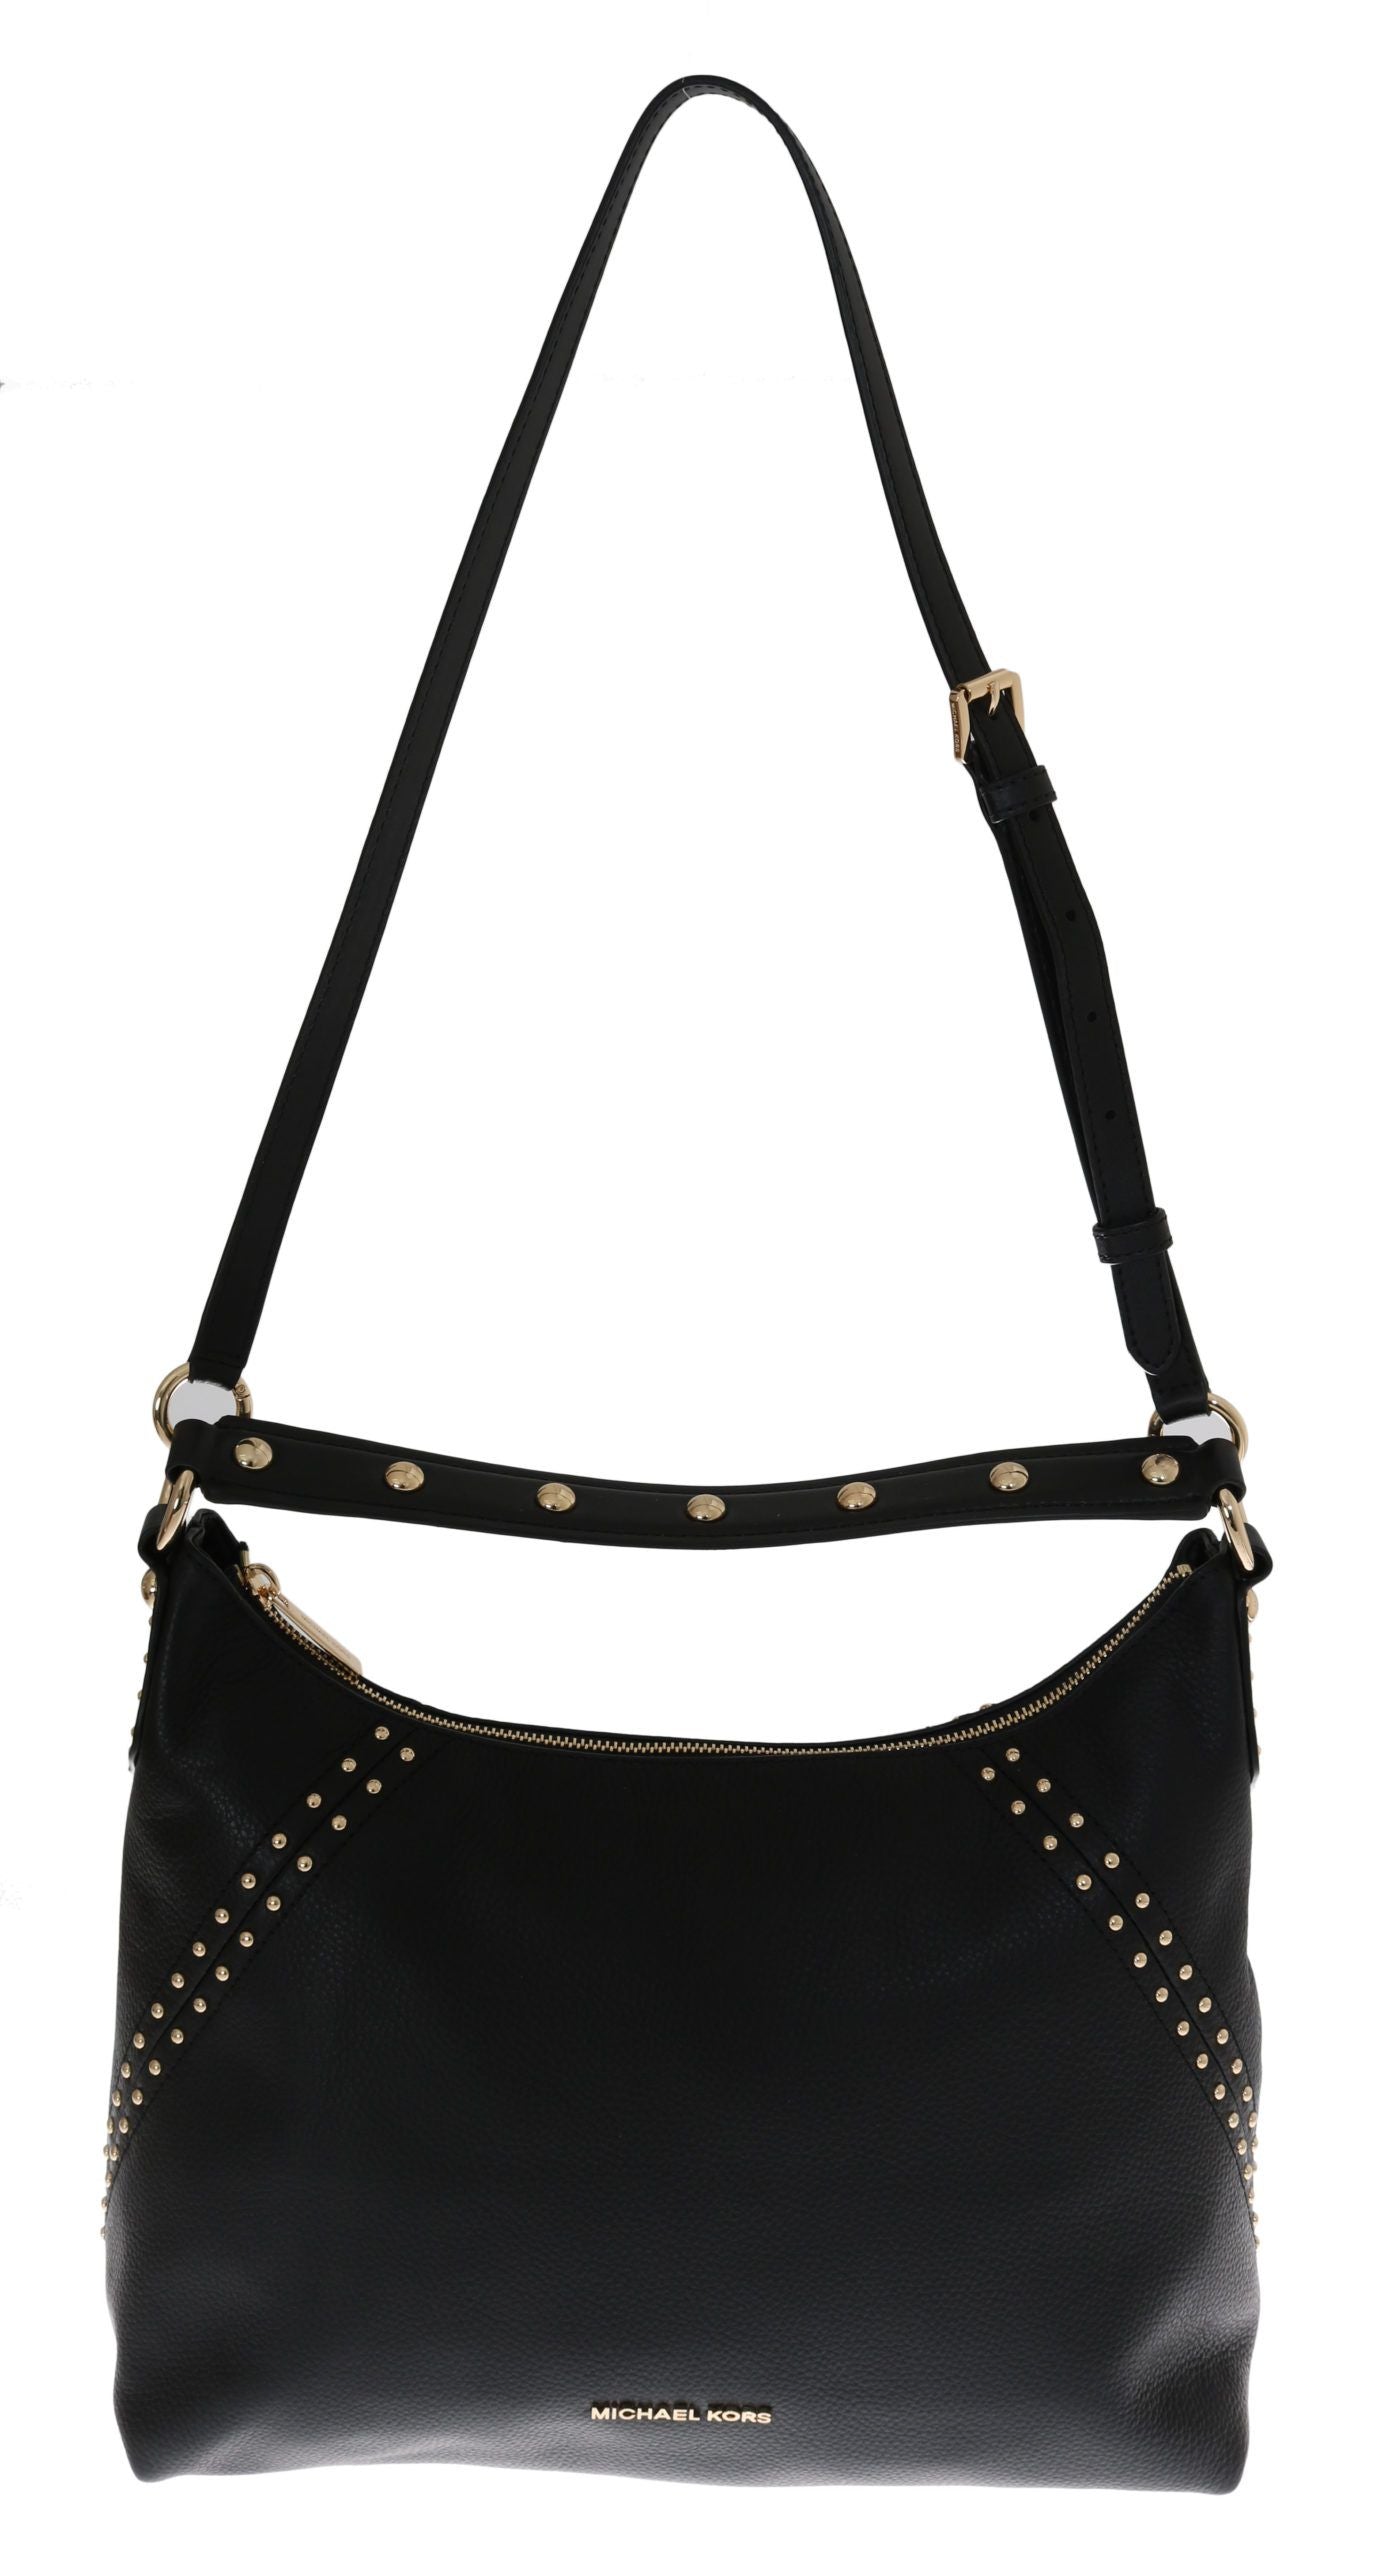 Michael Kors Black ARIA Leather Shoulder Bag